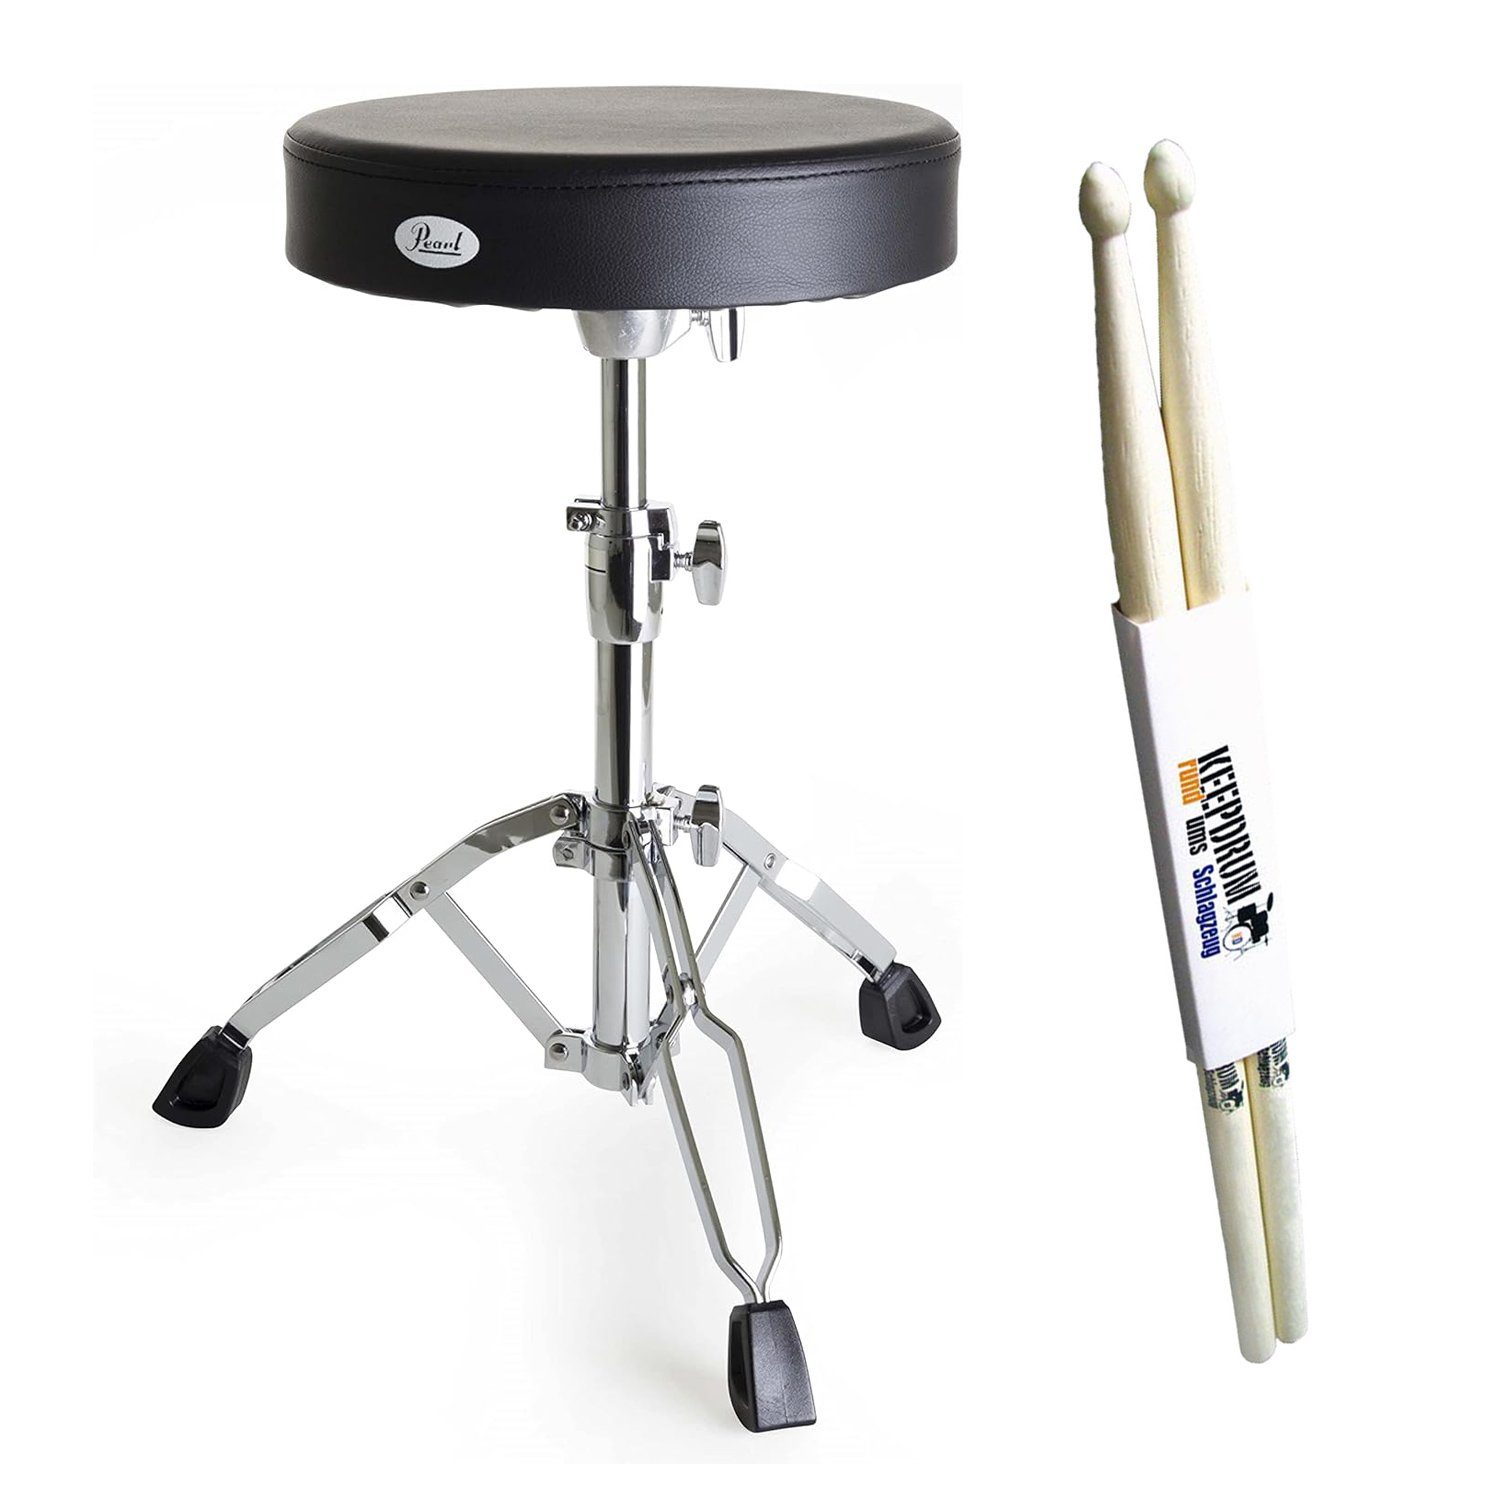 Pearl Drums Schlagzeughocker D-790 (Rundsitz, schwarz), mit Drumsticks